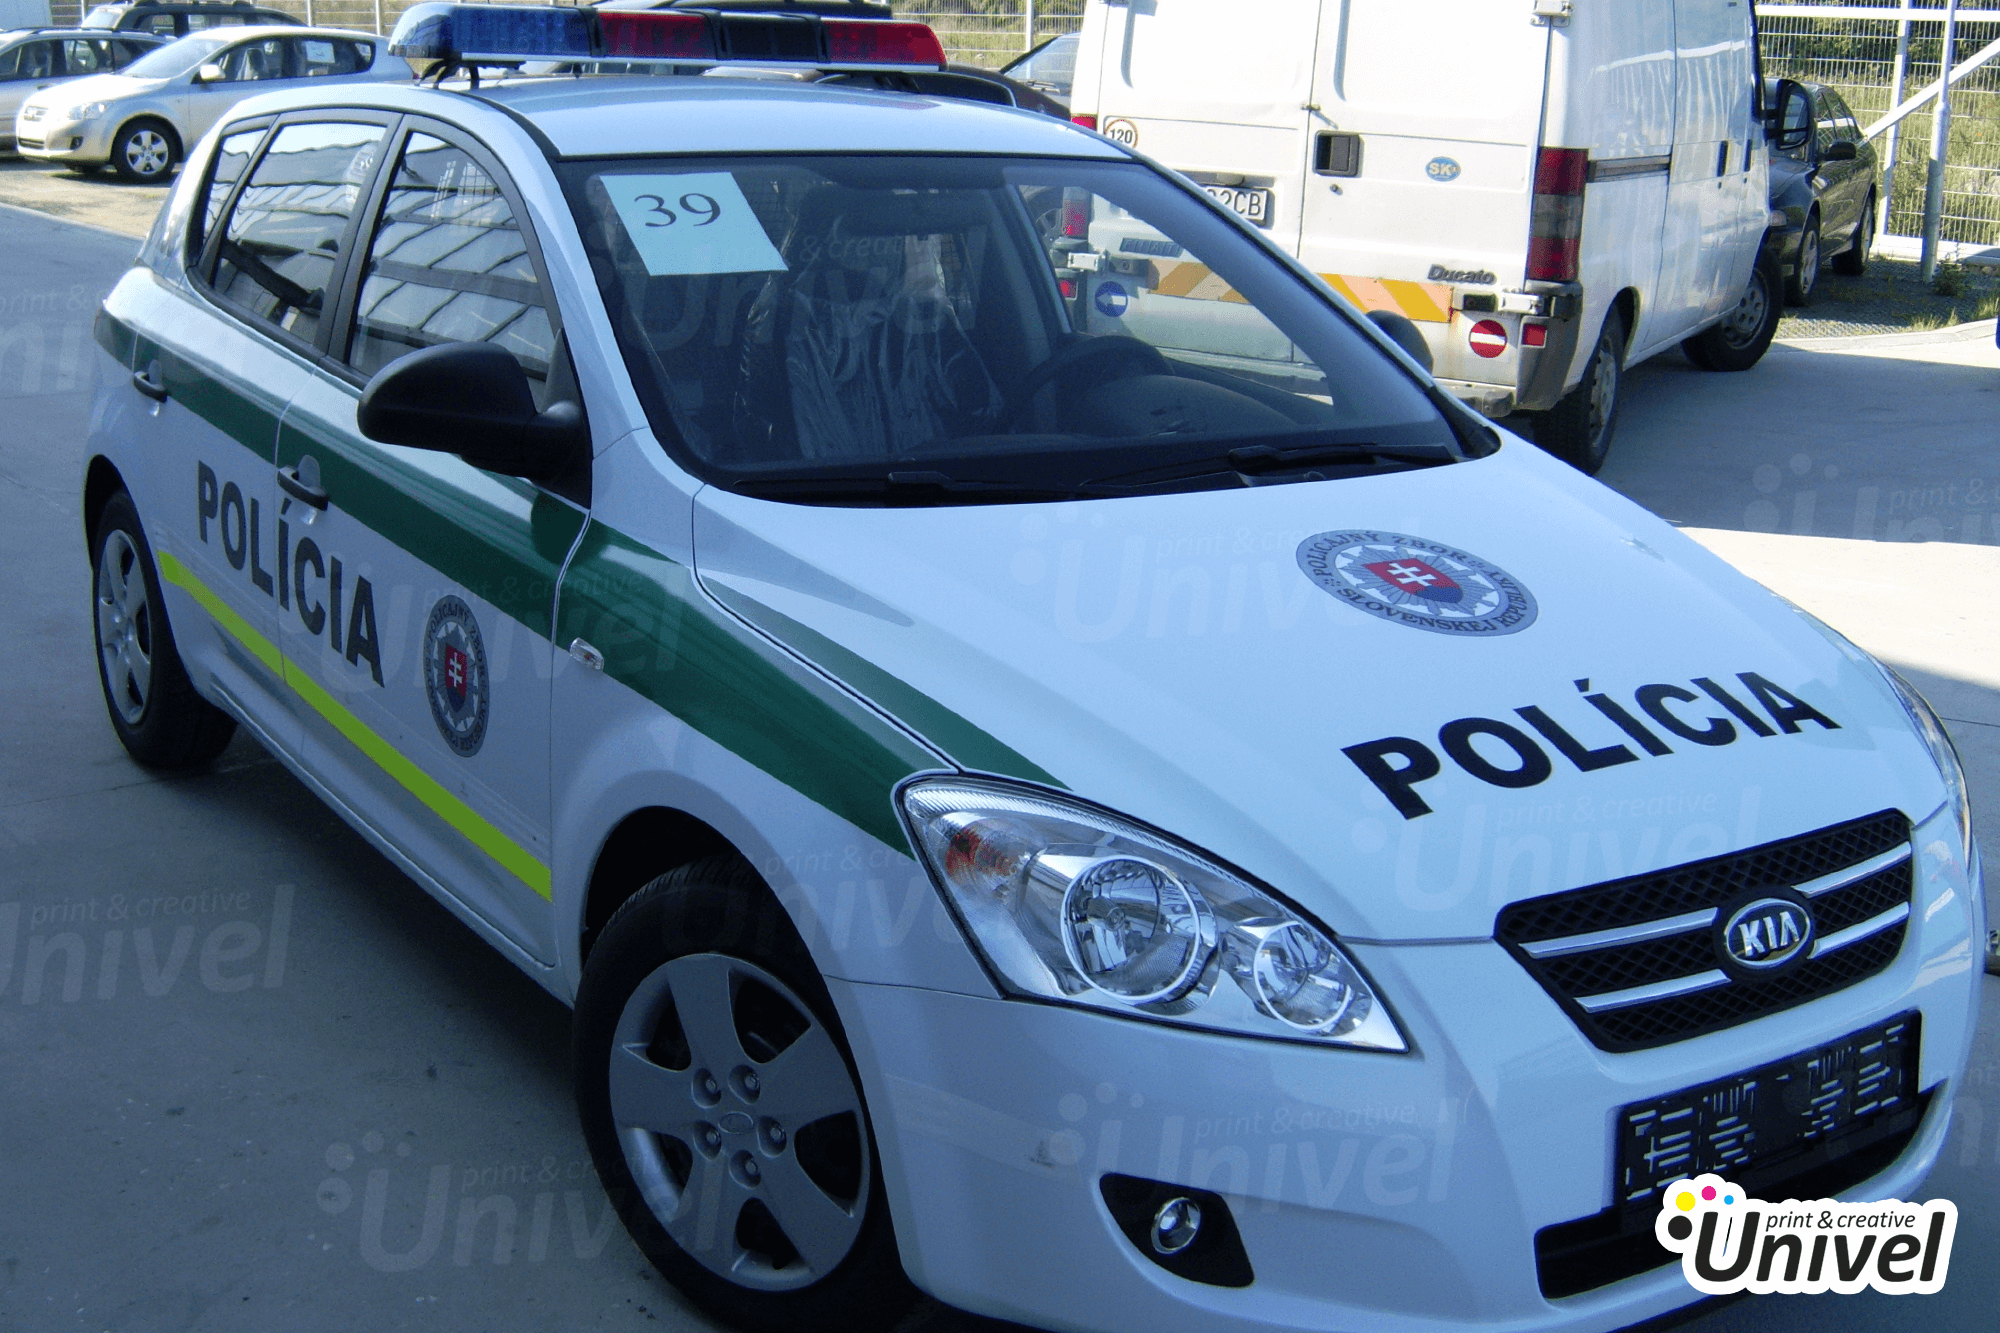 Univel 2021 - Polícia - policajné auto KIA - čiastočný polep auta, nápisy nálepky na auto - pohľad z boku auta